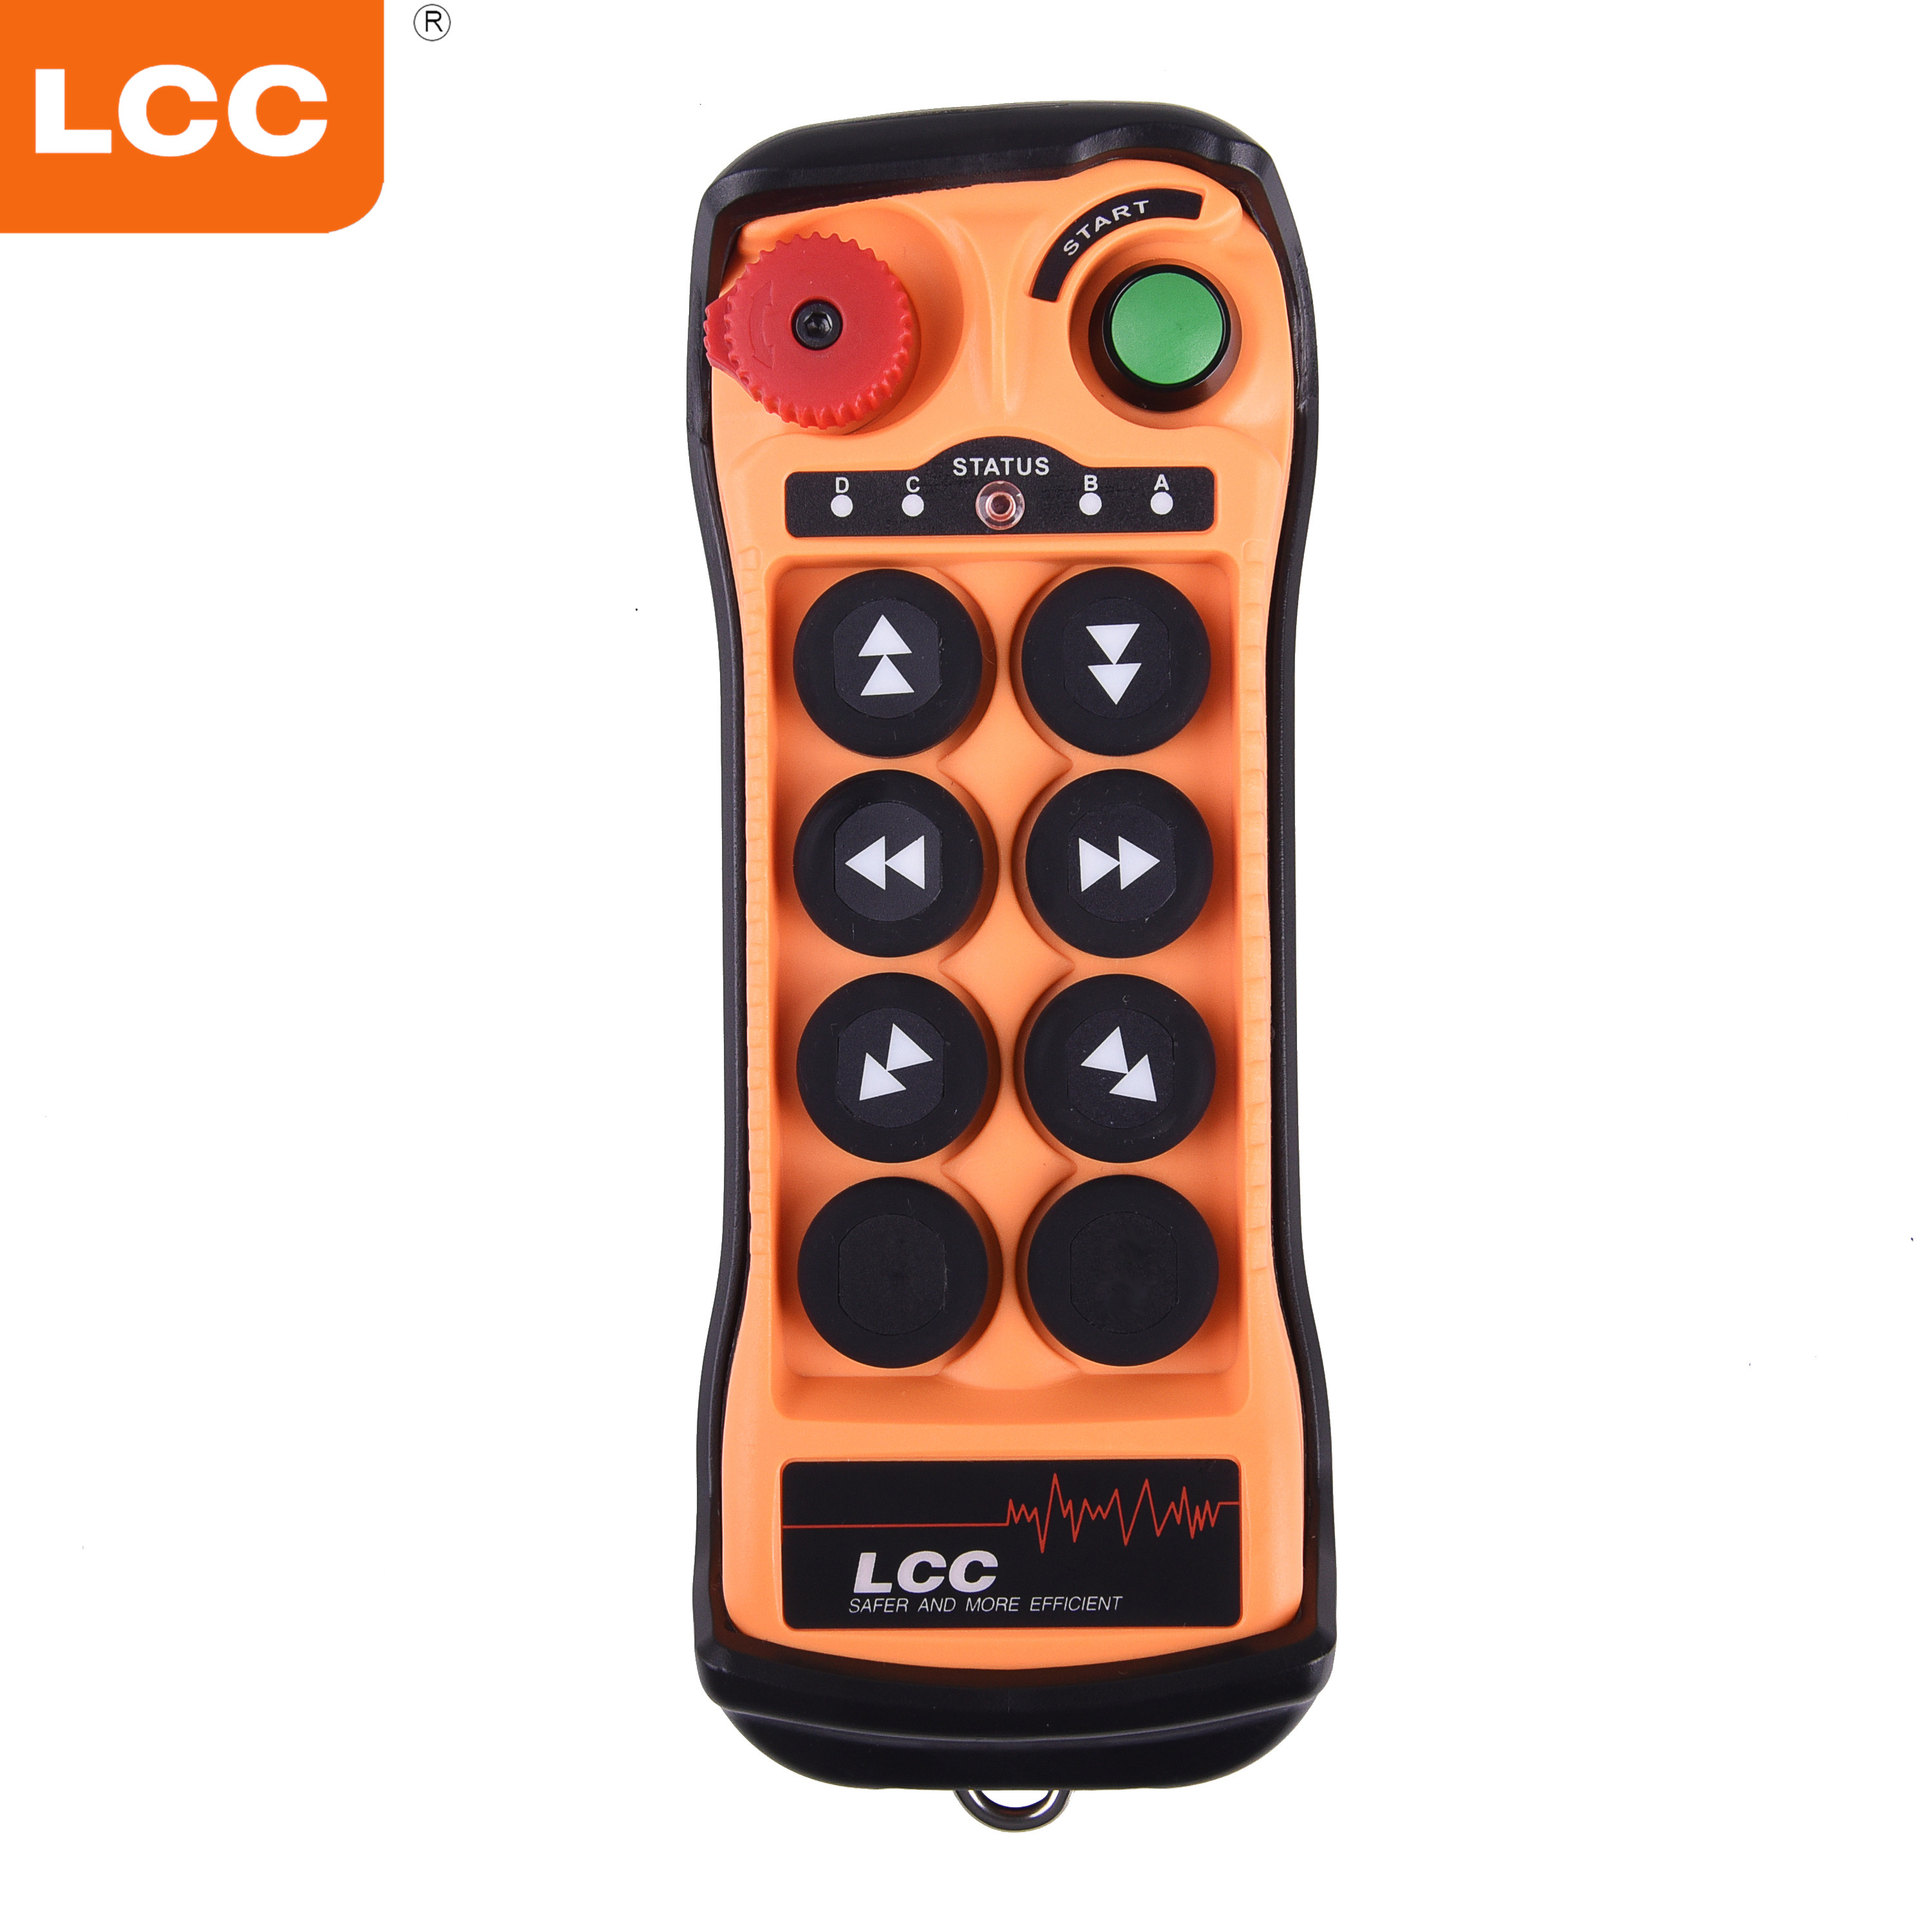 Q606 Controles remotos de grúa de elevación de transmisor y receptor inalámbricos de doble velocidad de 6 botones